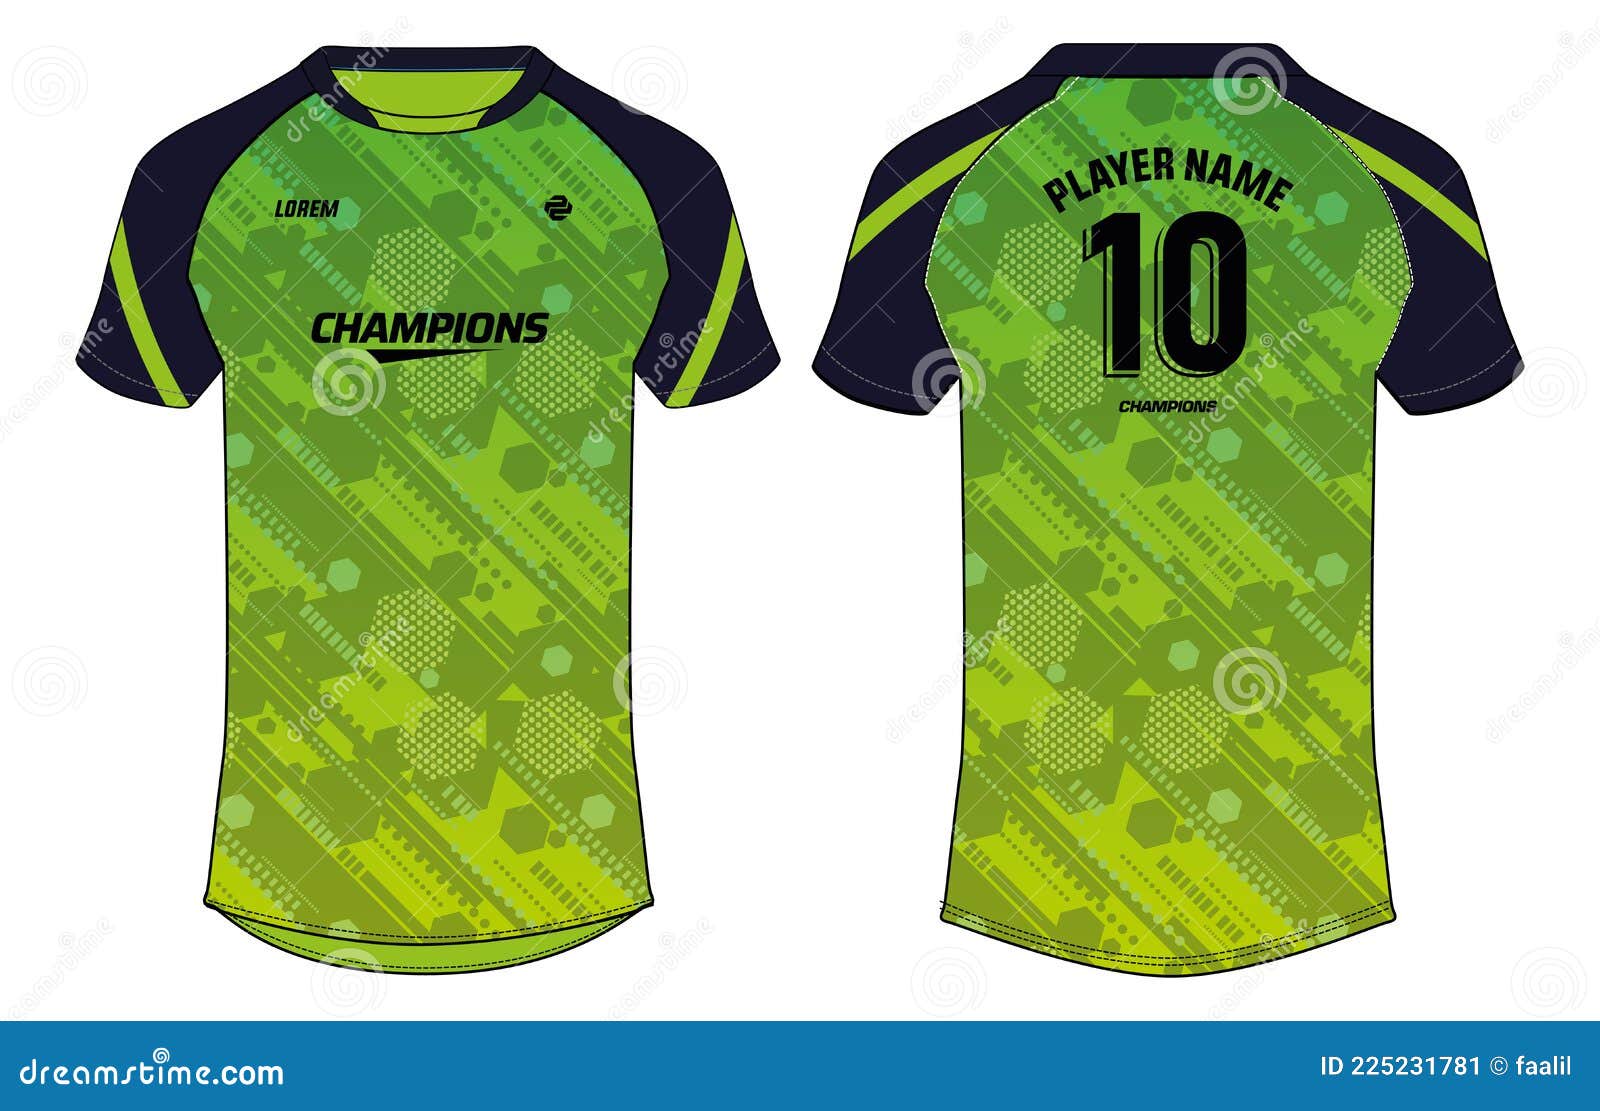 Sports Jersey  Sports jersey design, Sport shirt design, Cricket